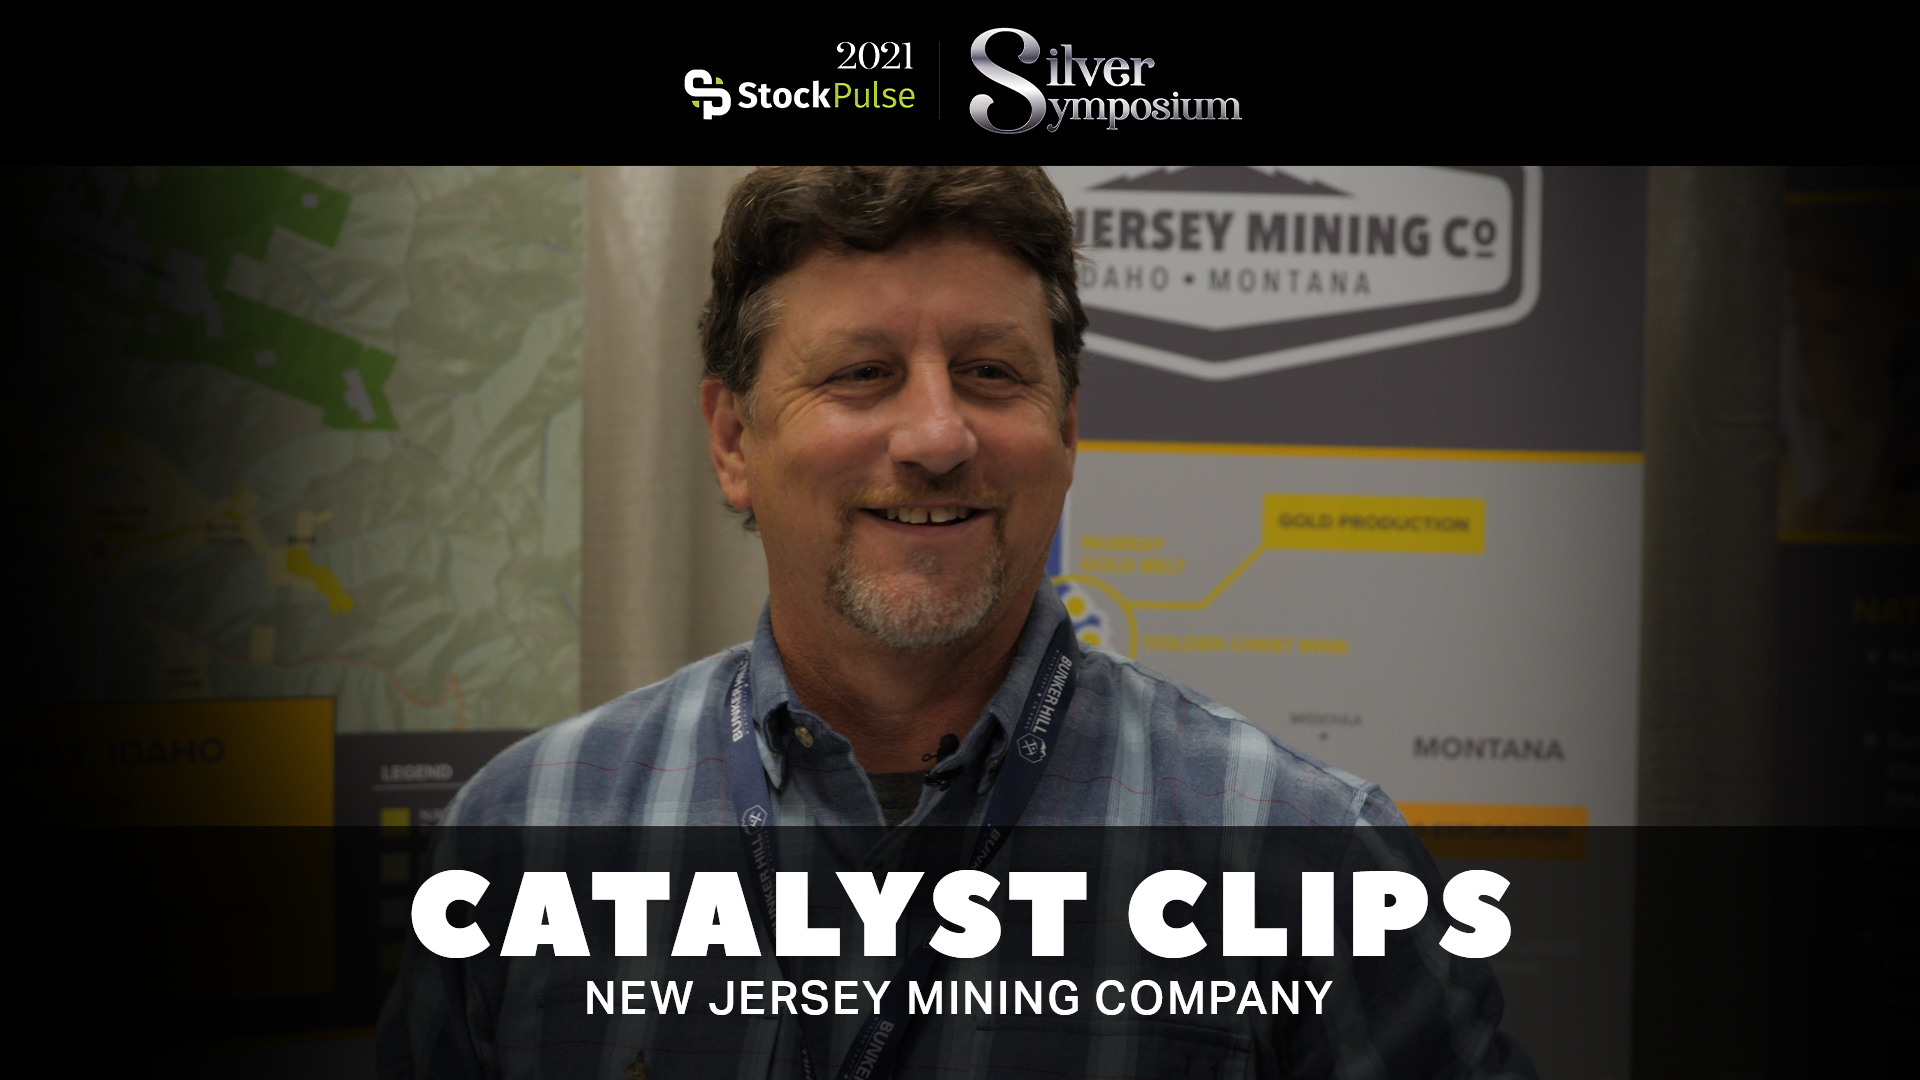 2021 StockPulse Silver Symposium Catalyst Clips | John Swallow of New Jersey Mining Company